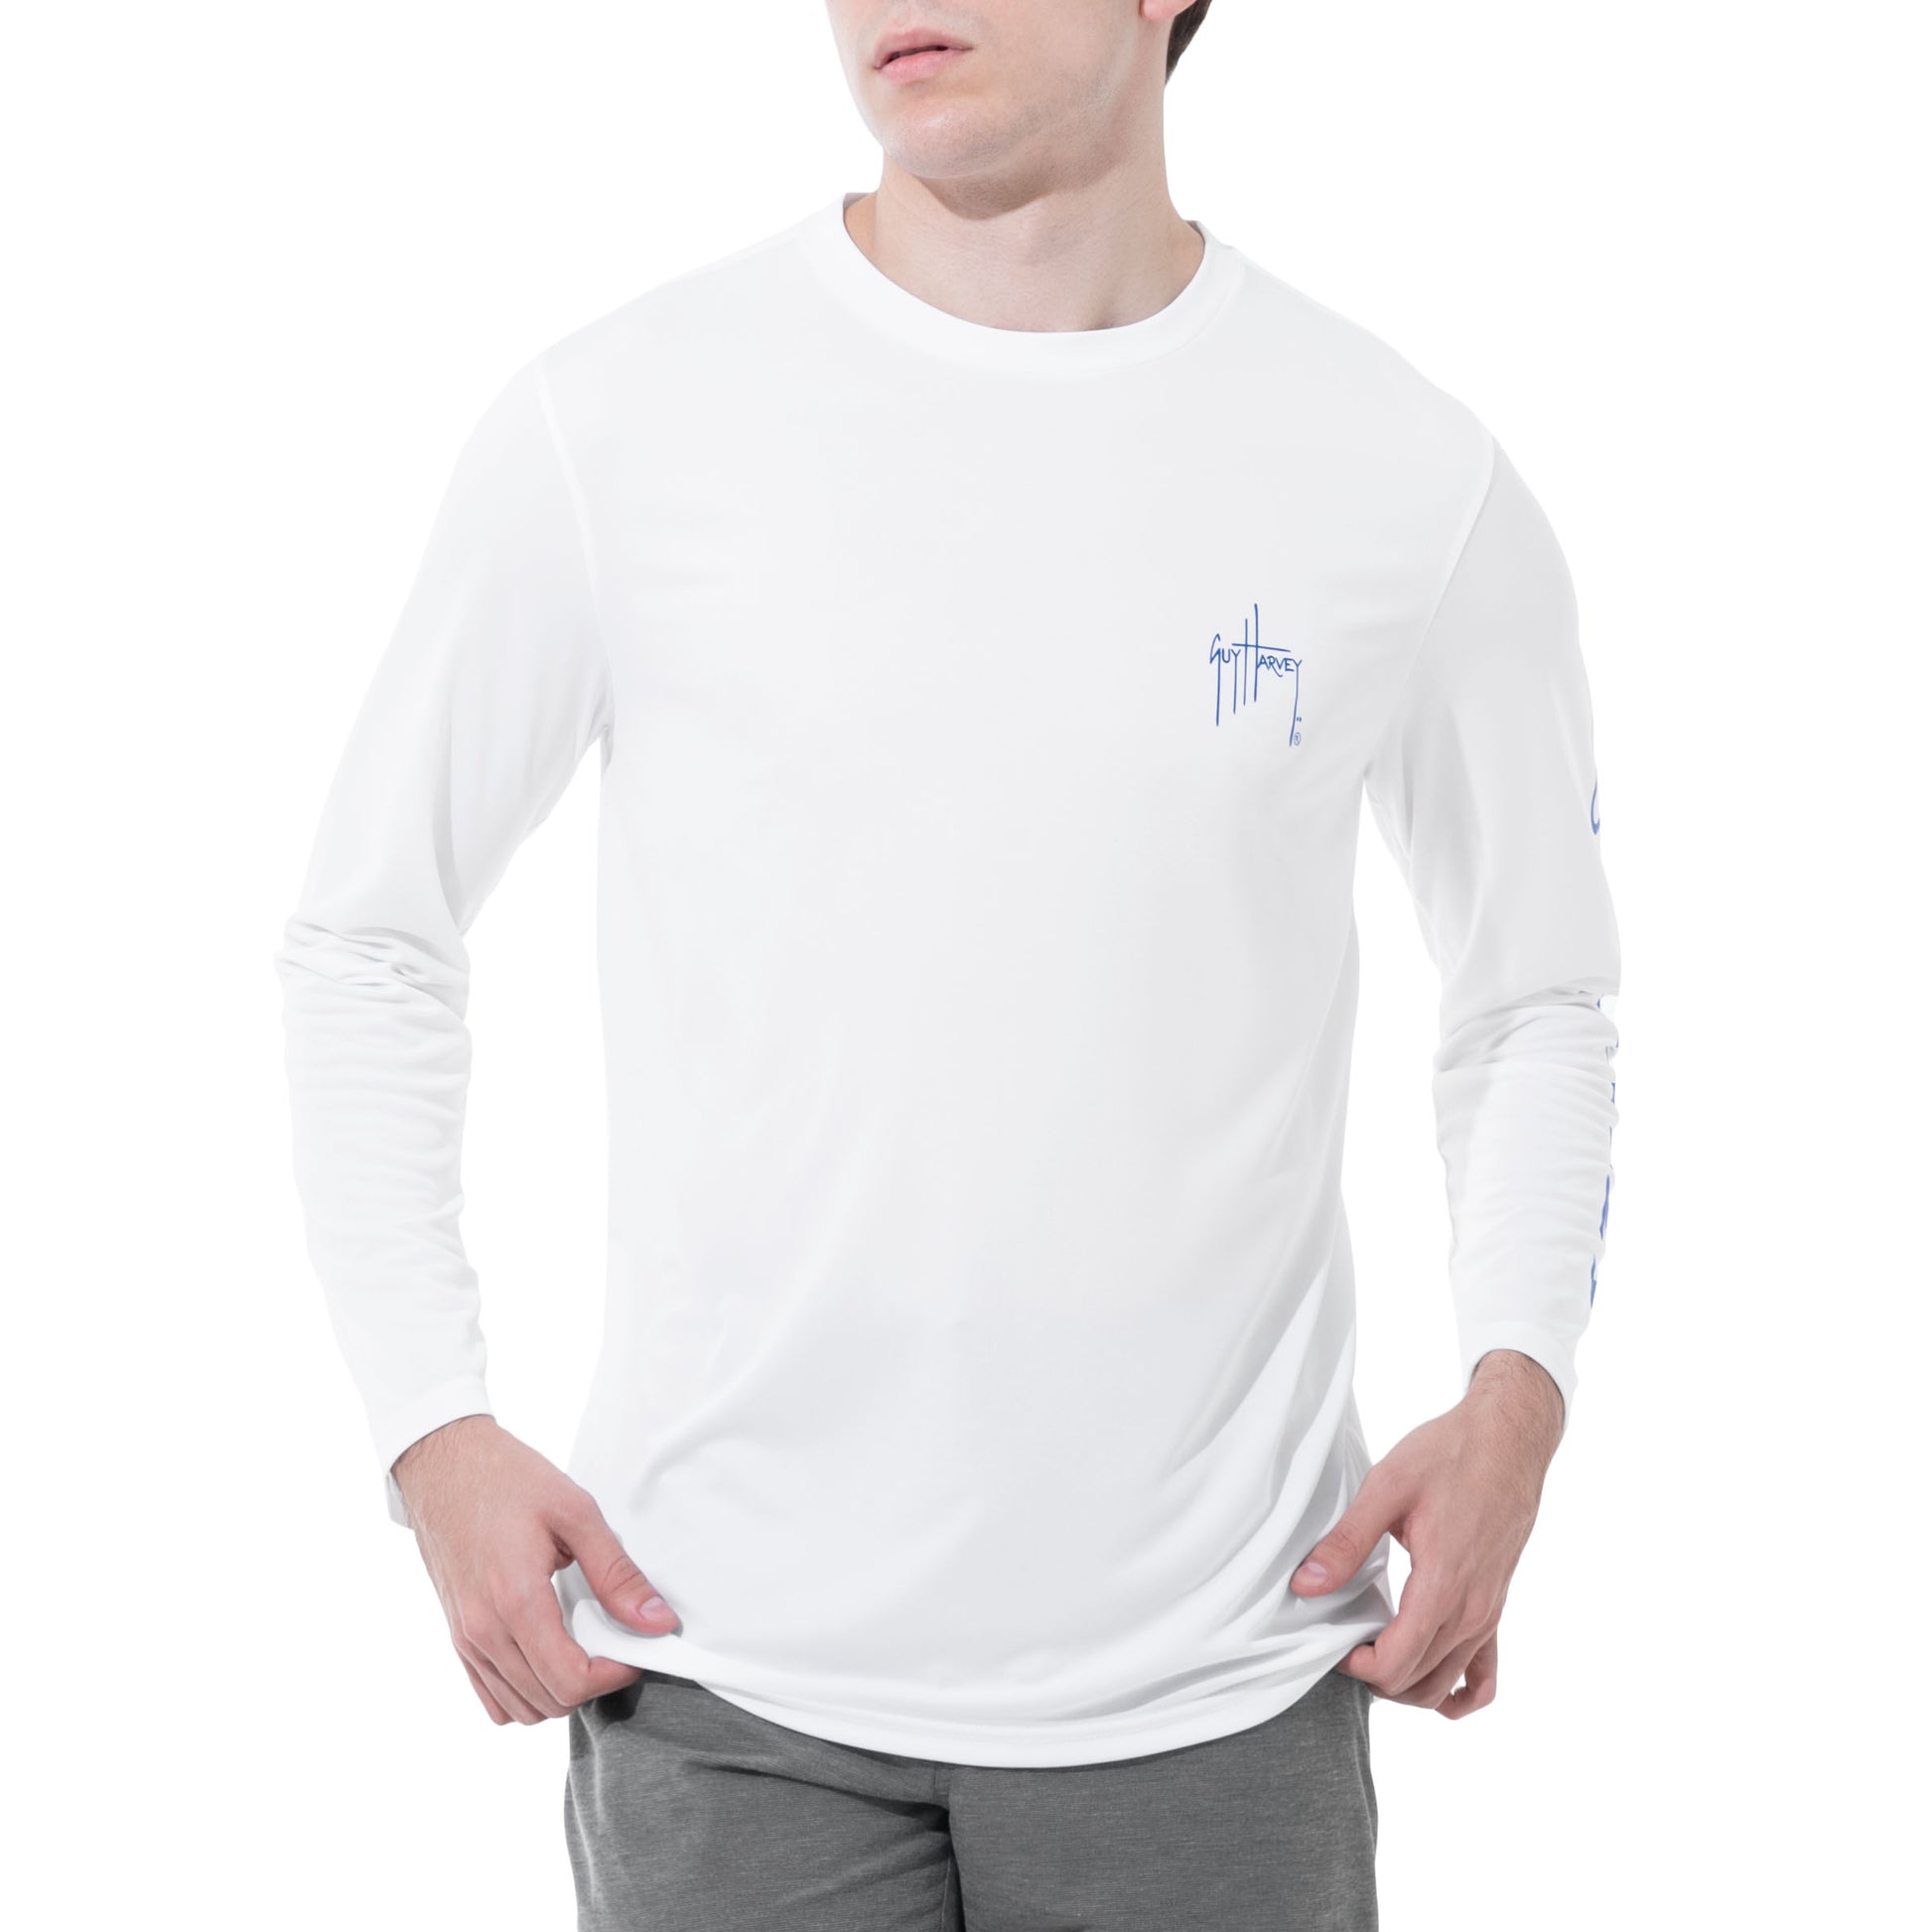 Buy CRYSULLY Men's UPF 50+ Fishing Shirts Long Sleeve Sun